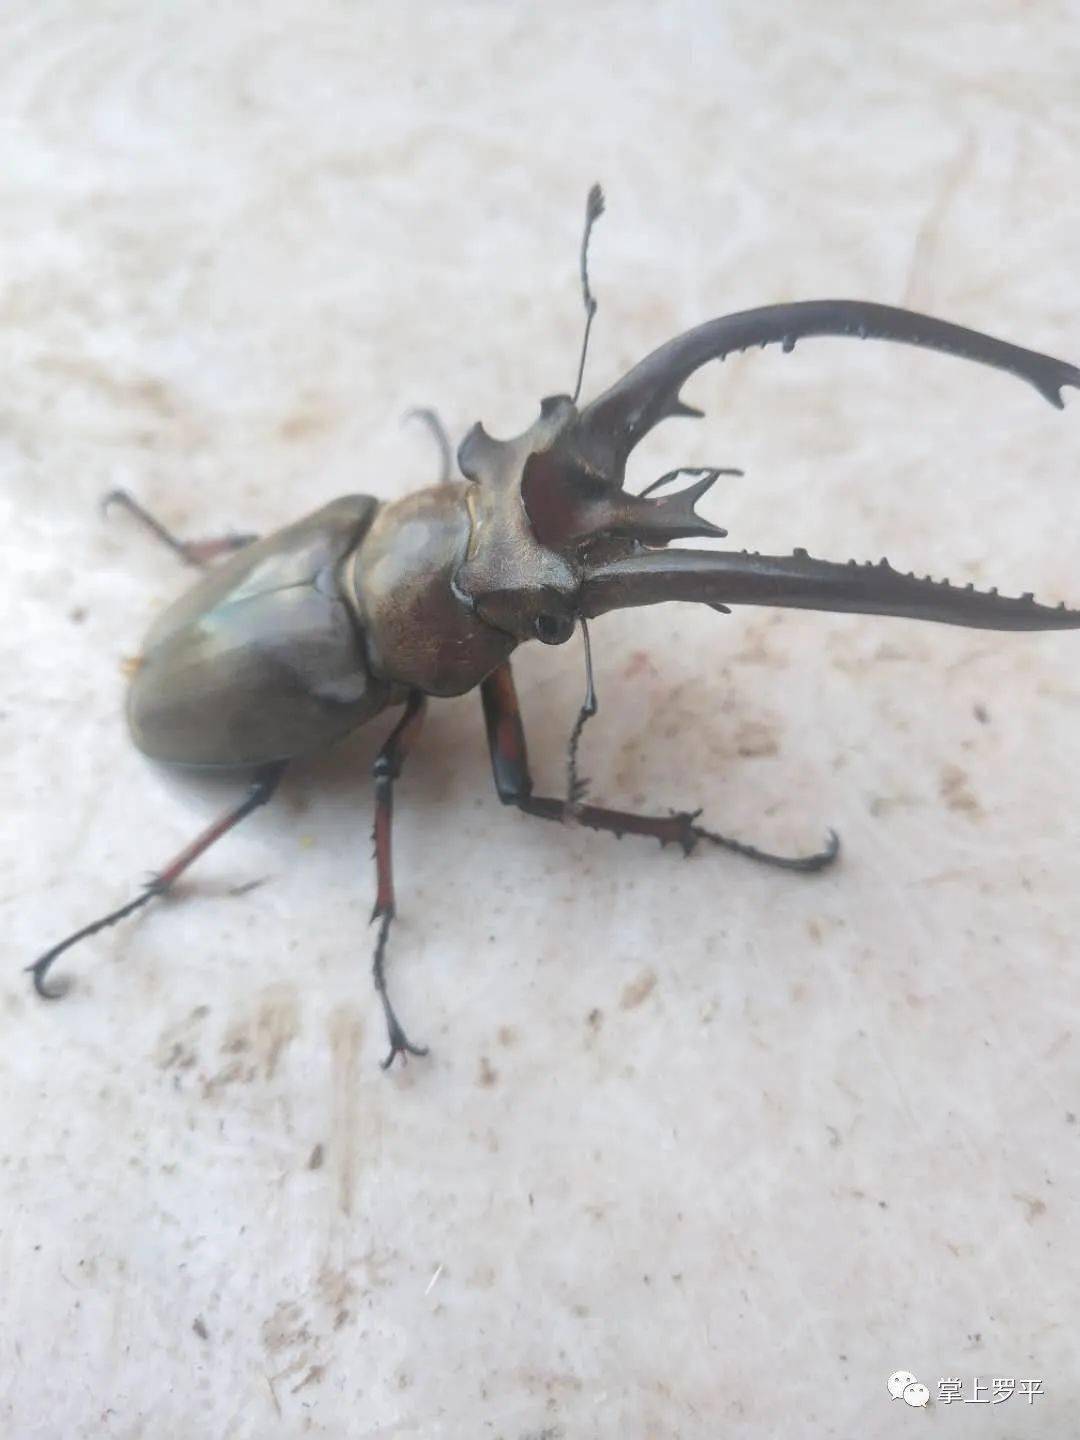 罗平一村民树林中发现大甲虫,体长约8cm头上长犄角!你